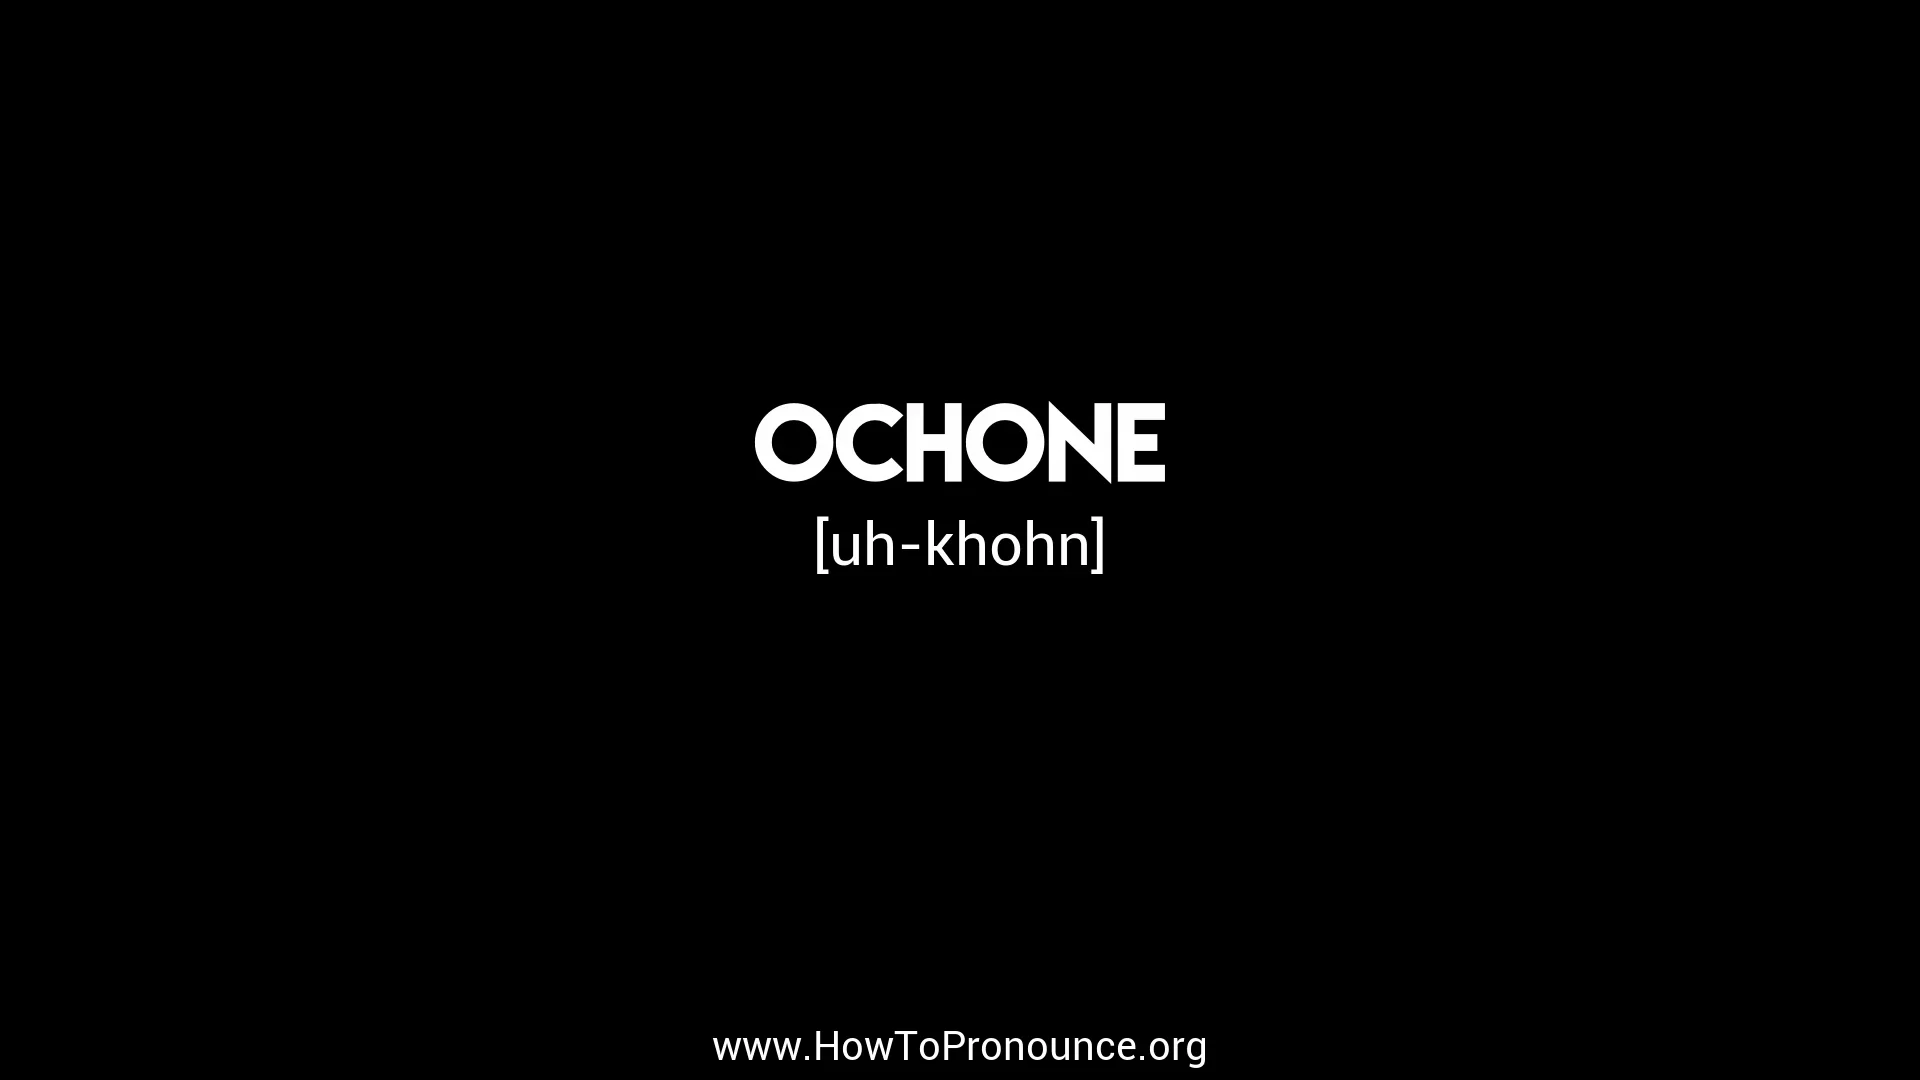 How to Pronounce ochone on Vimeo